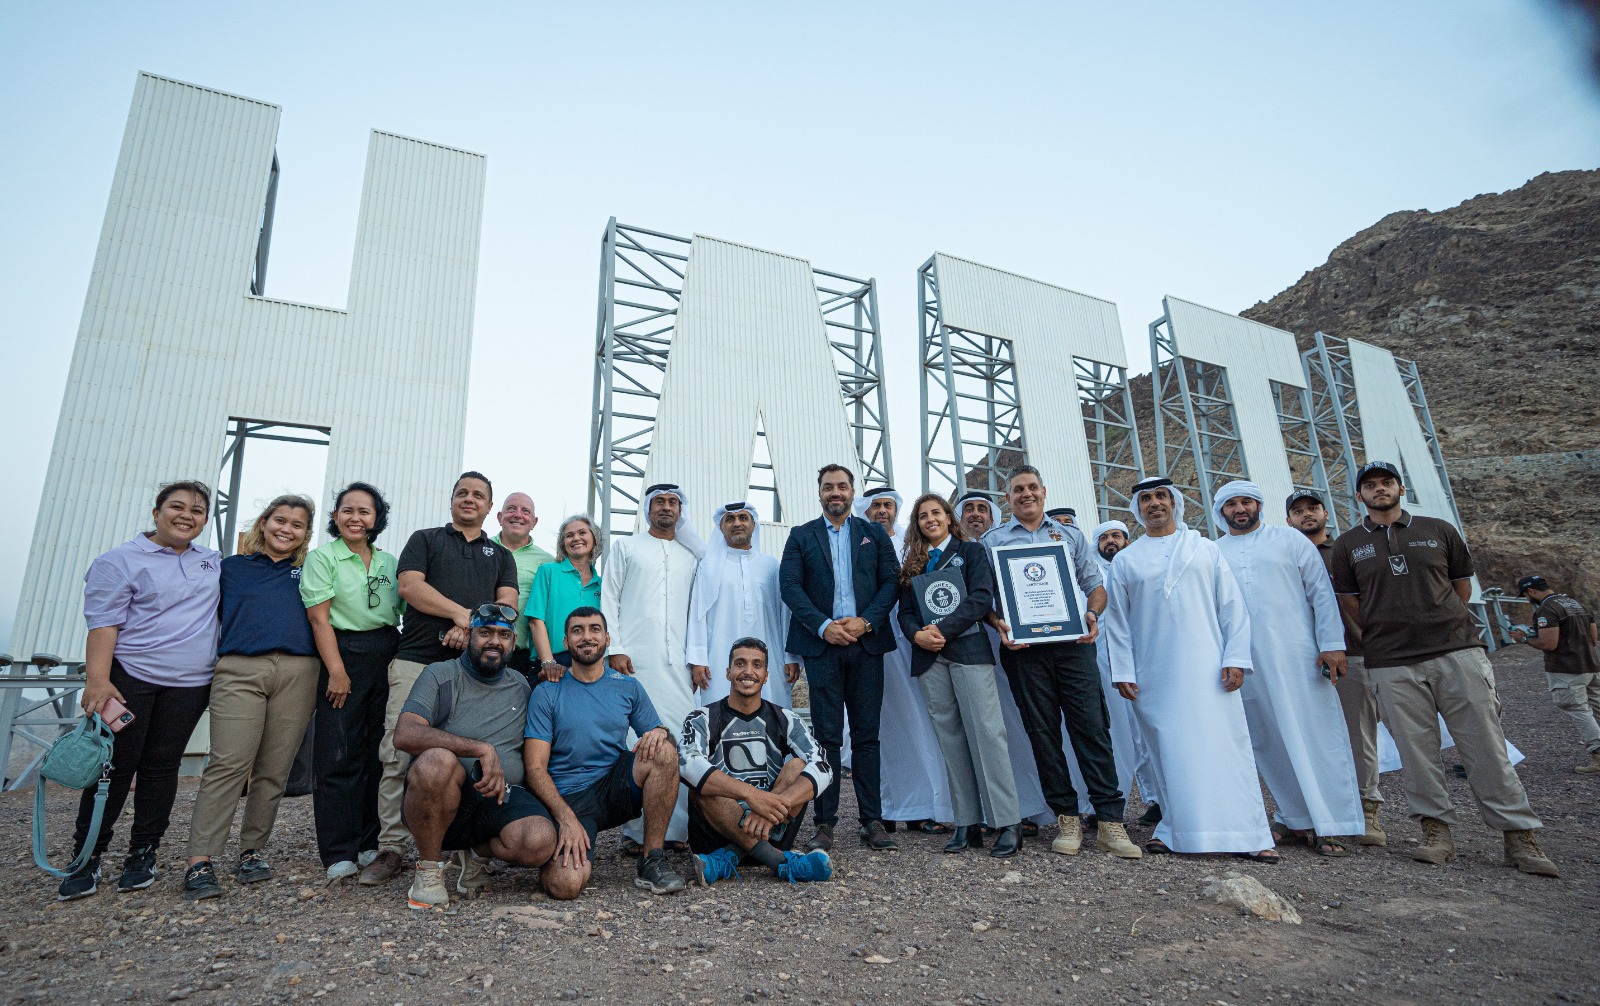 لافتة دبي القابضة الشهيرة بالحركة البطيئة التي يبلغ طولها 19.28 مترًا تدخل موسوعة غينيس للأرقام القياسية™